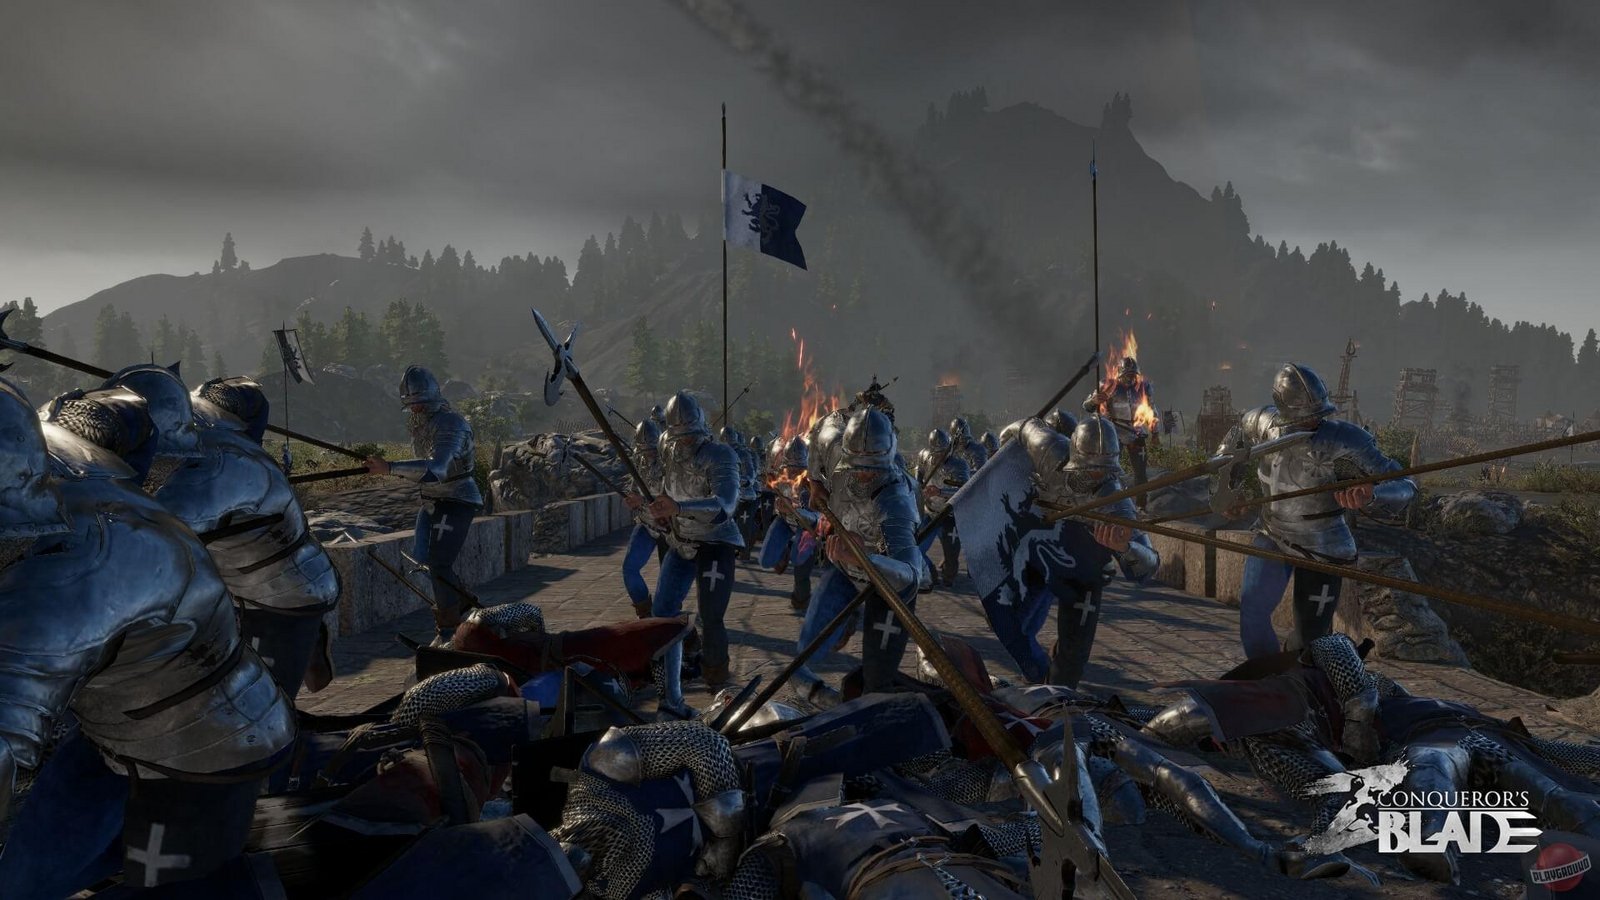 Conqueror's Blade: Knights & Squires